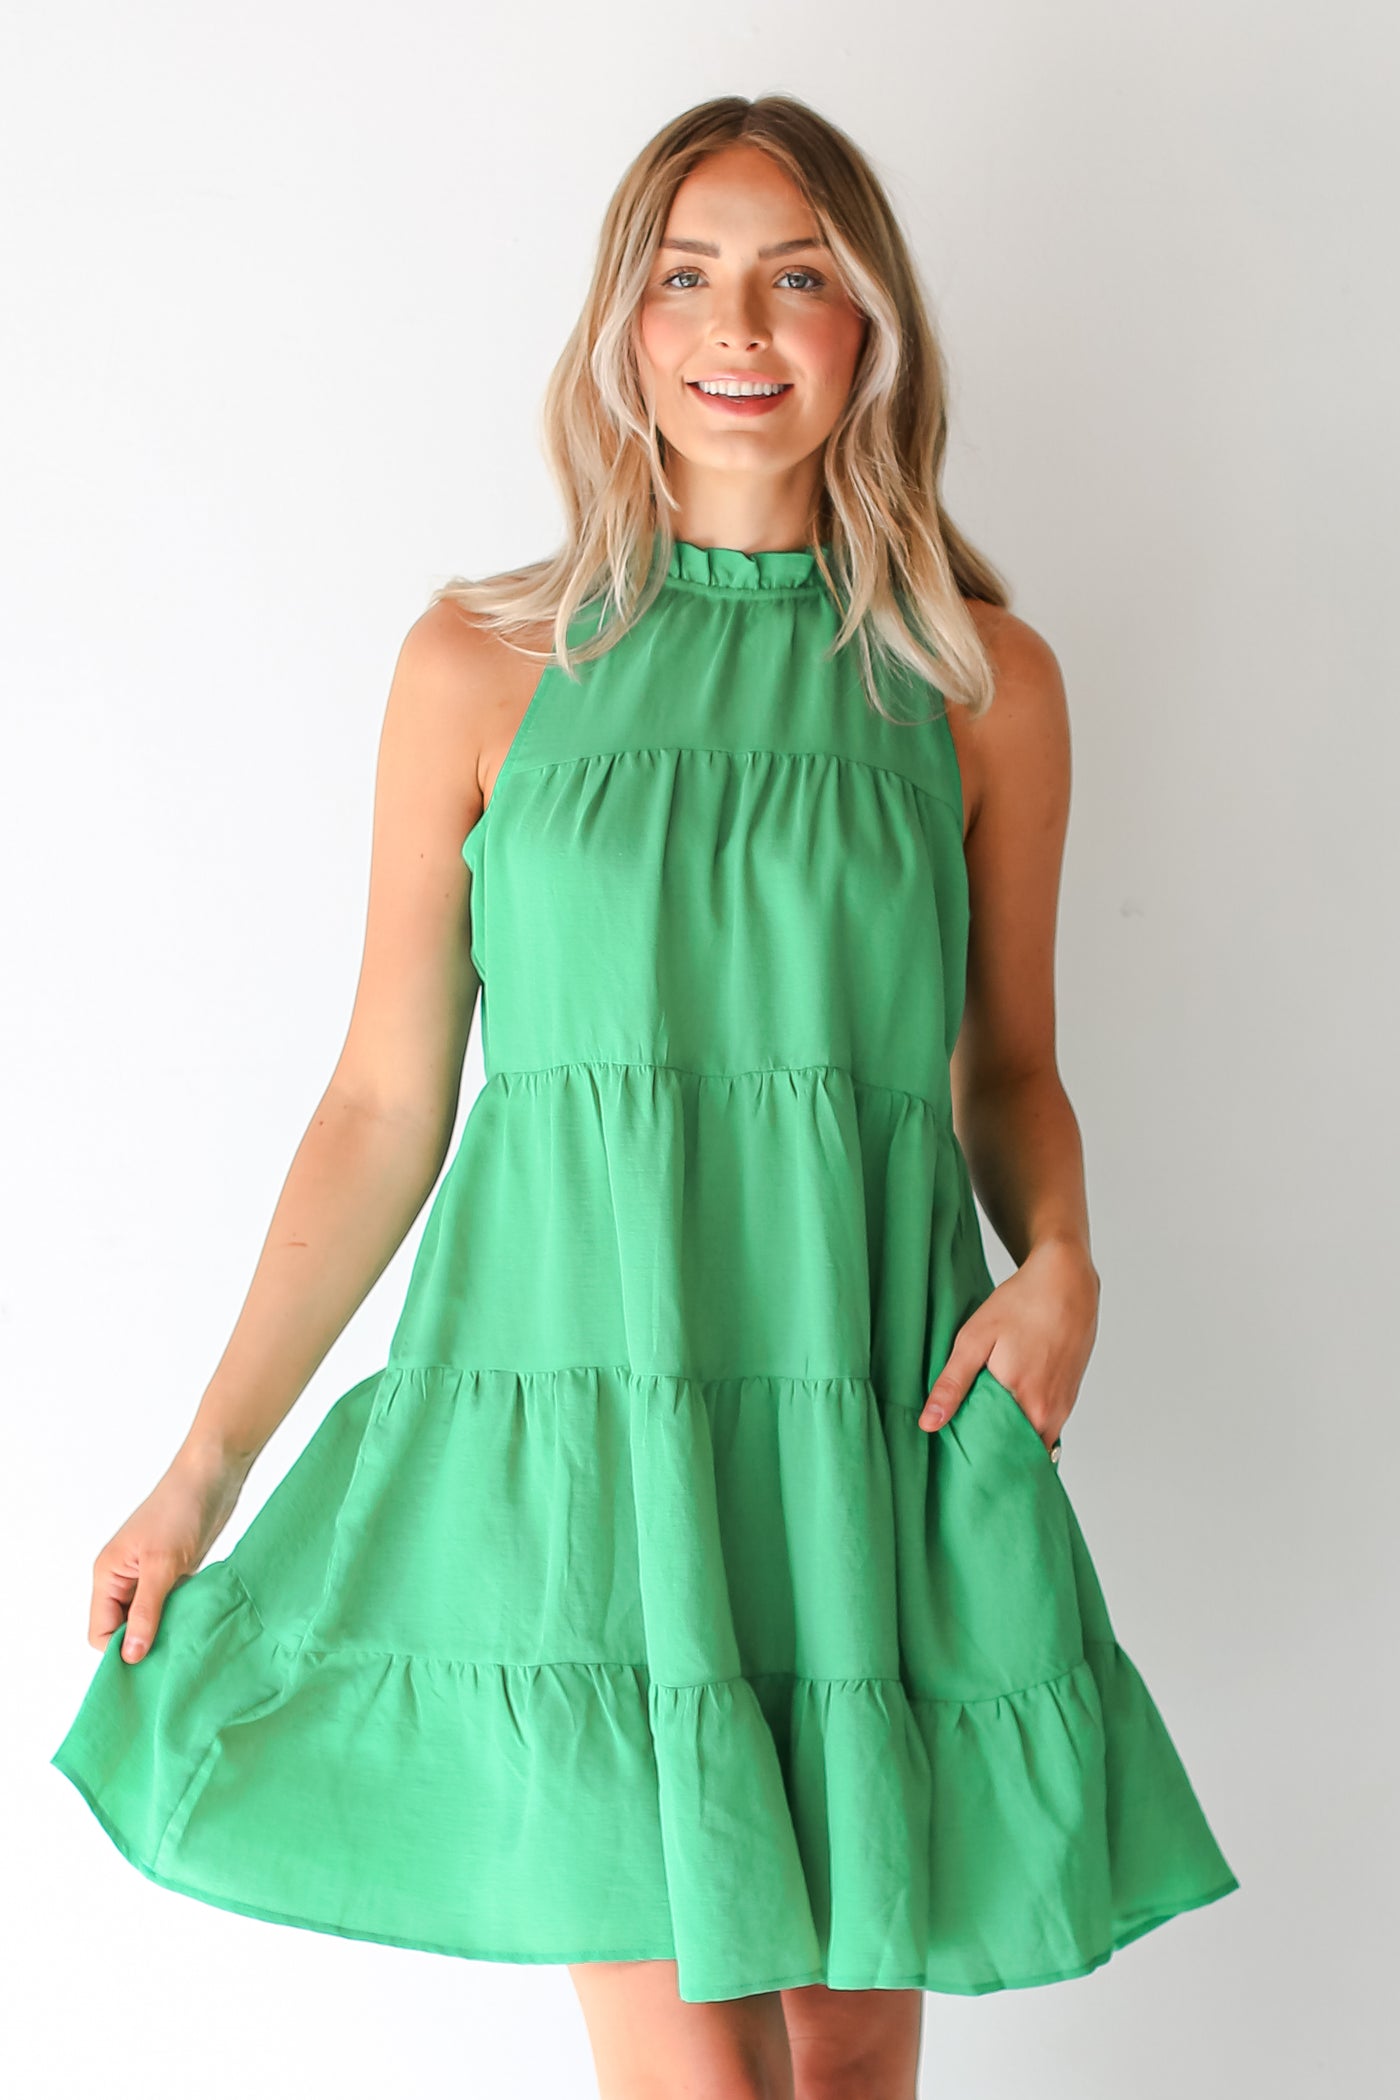 green Tiered Mini Dress on dress up model